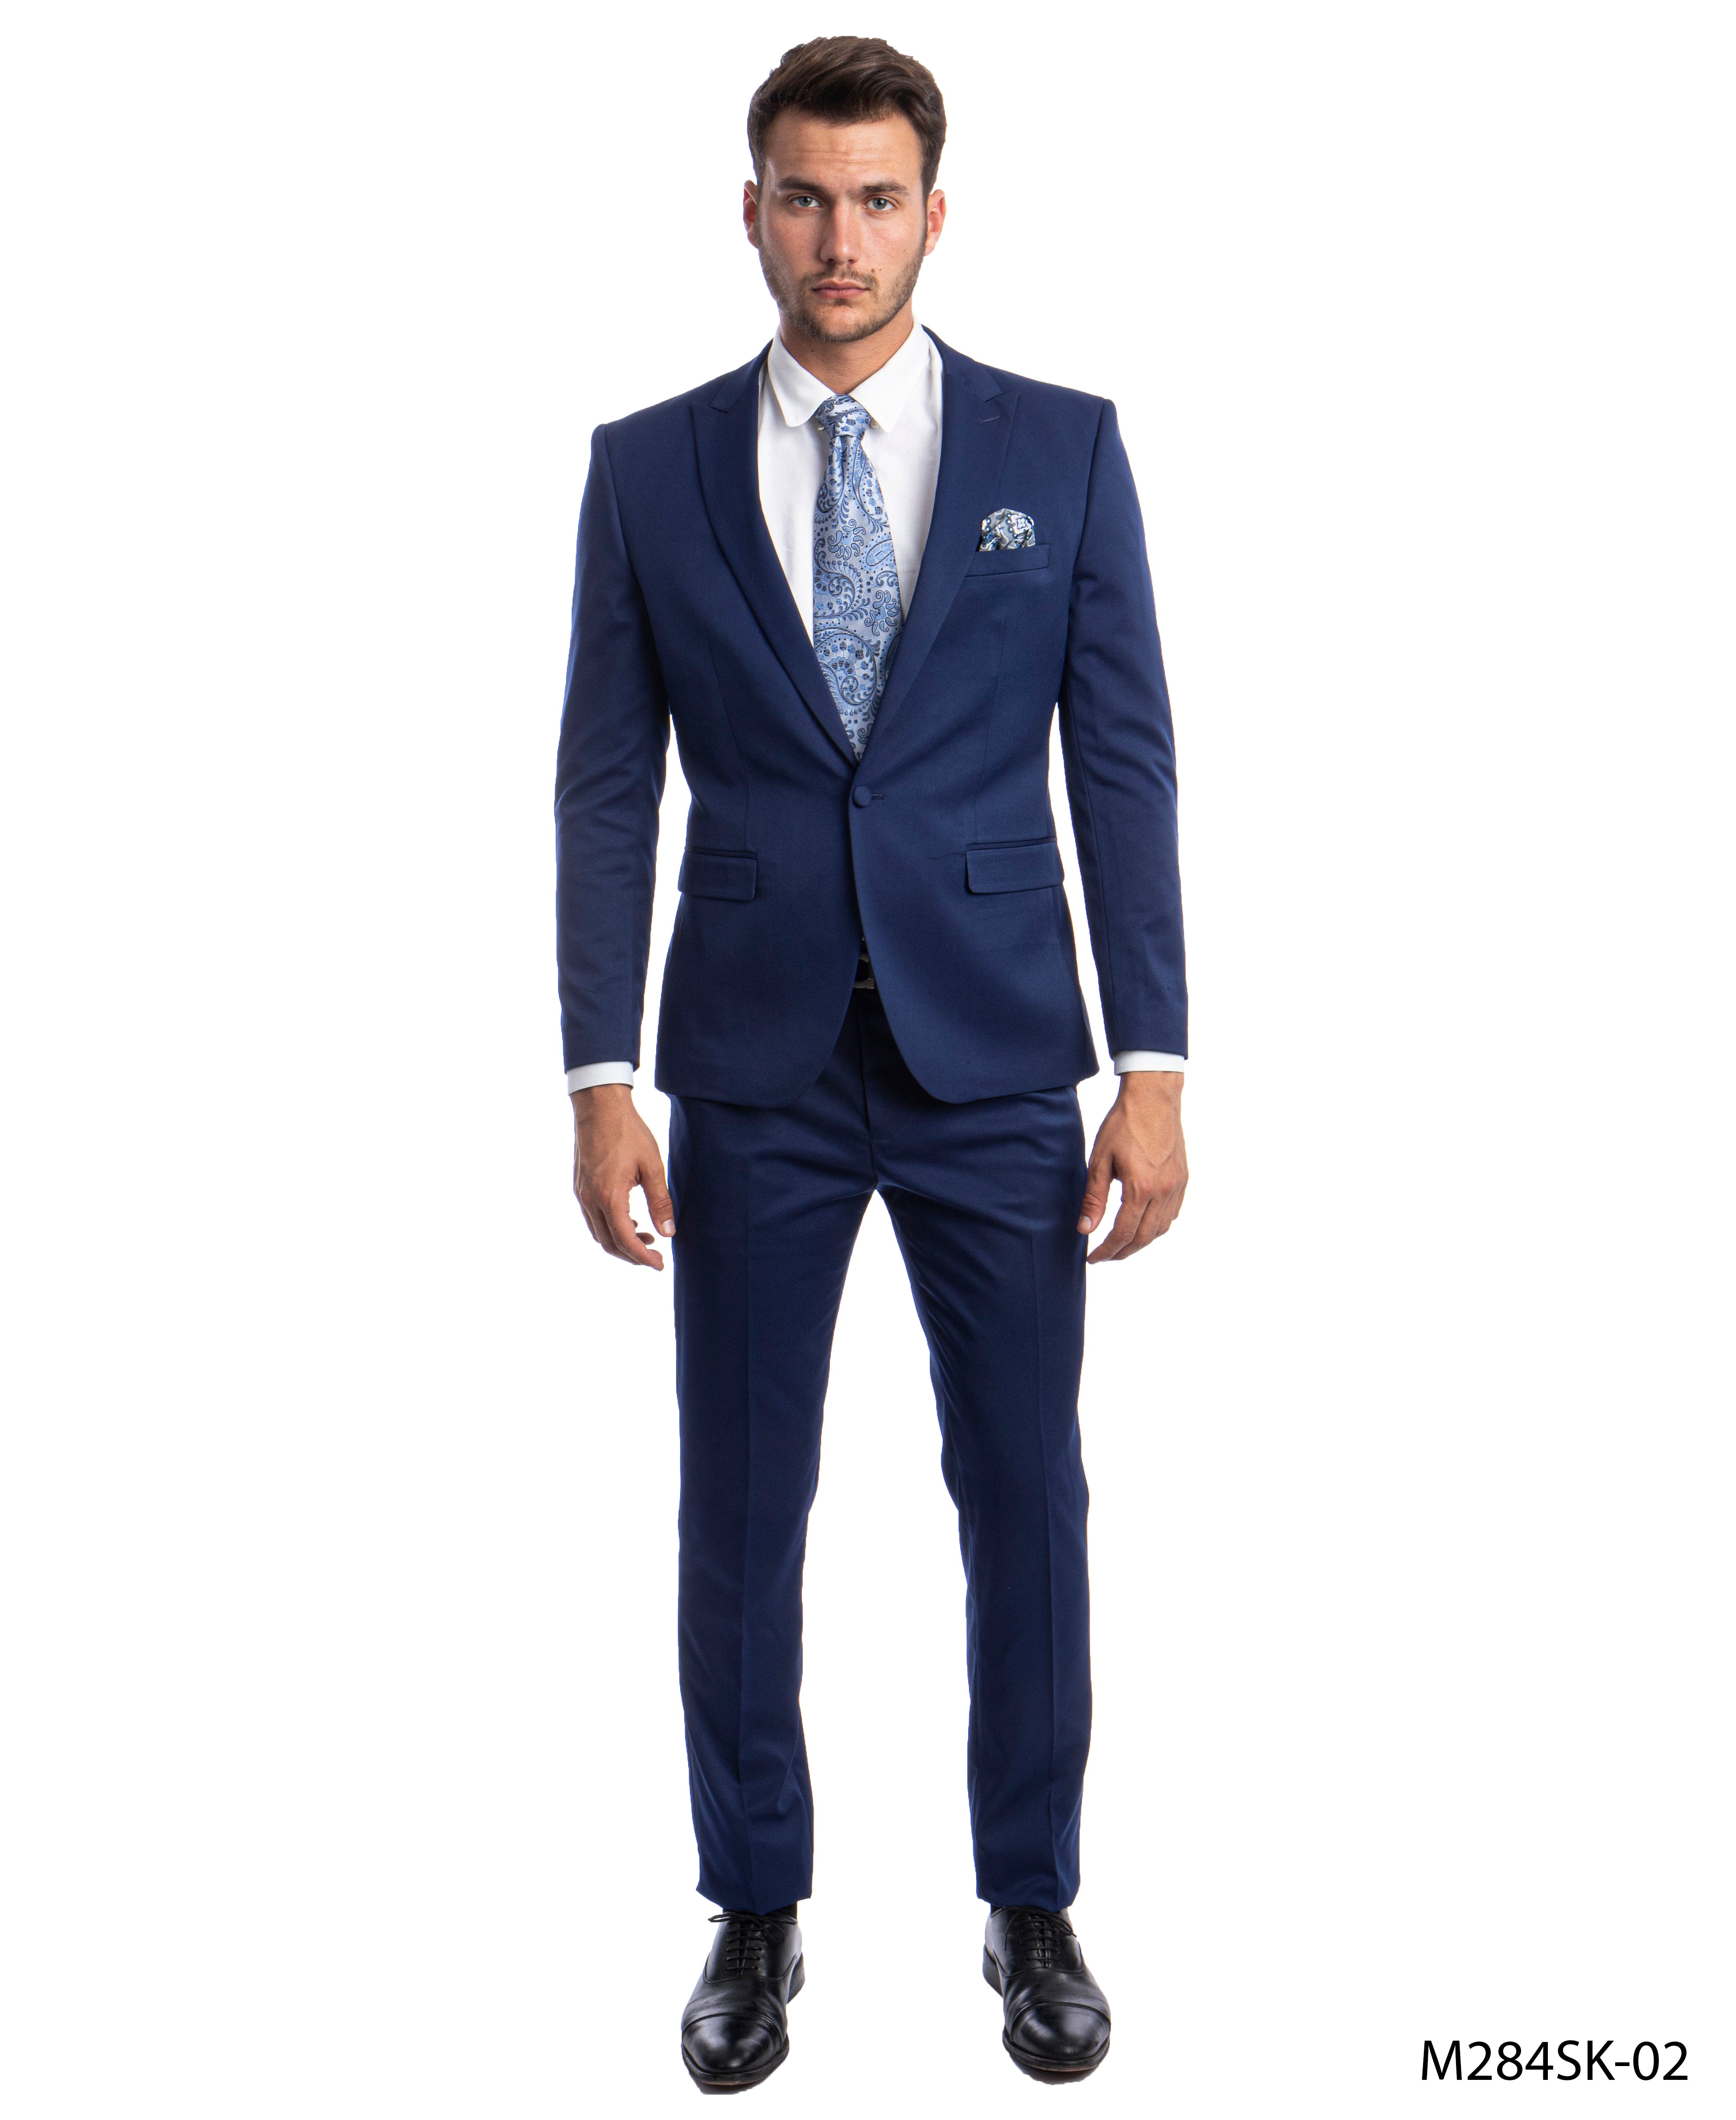 title:Sean Alexander Dk.Blue 2 PC Solid Suit Skinny Fit Suits;color:Dk.Blue